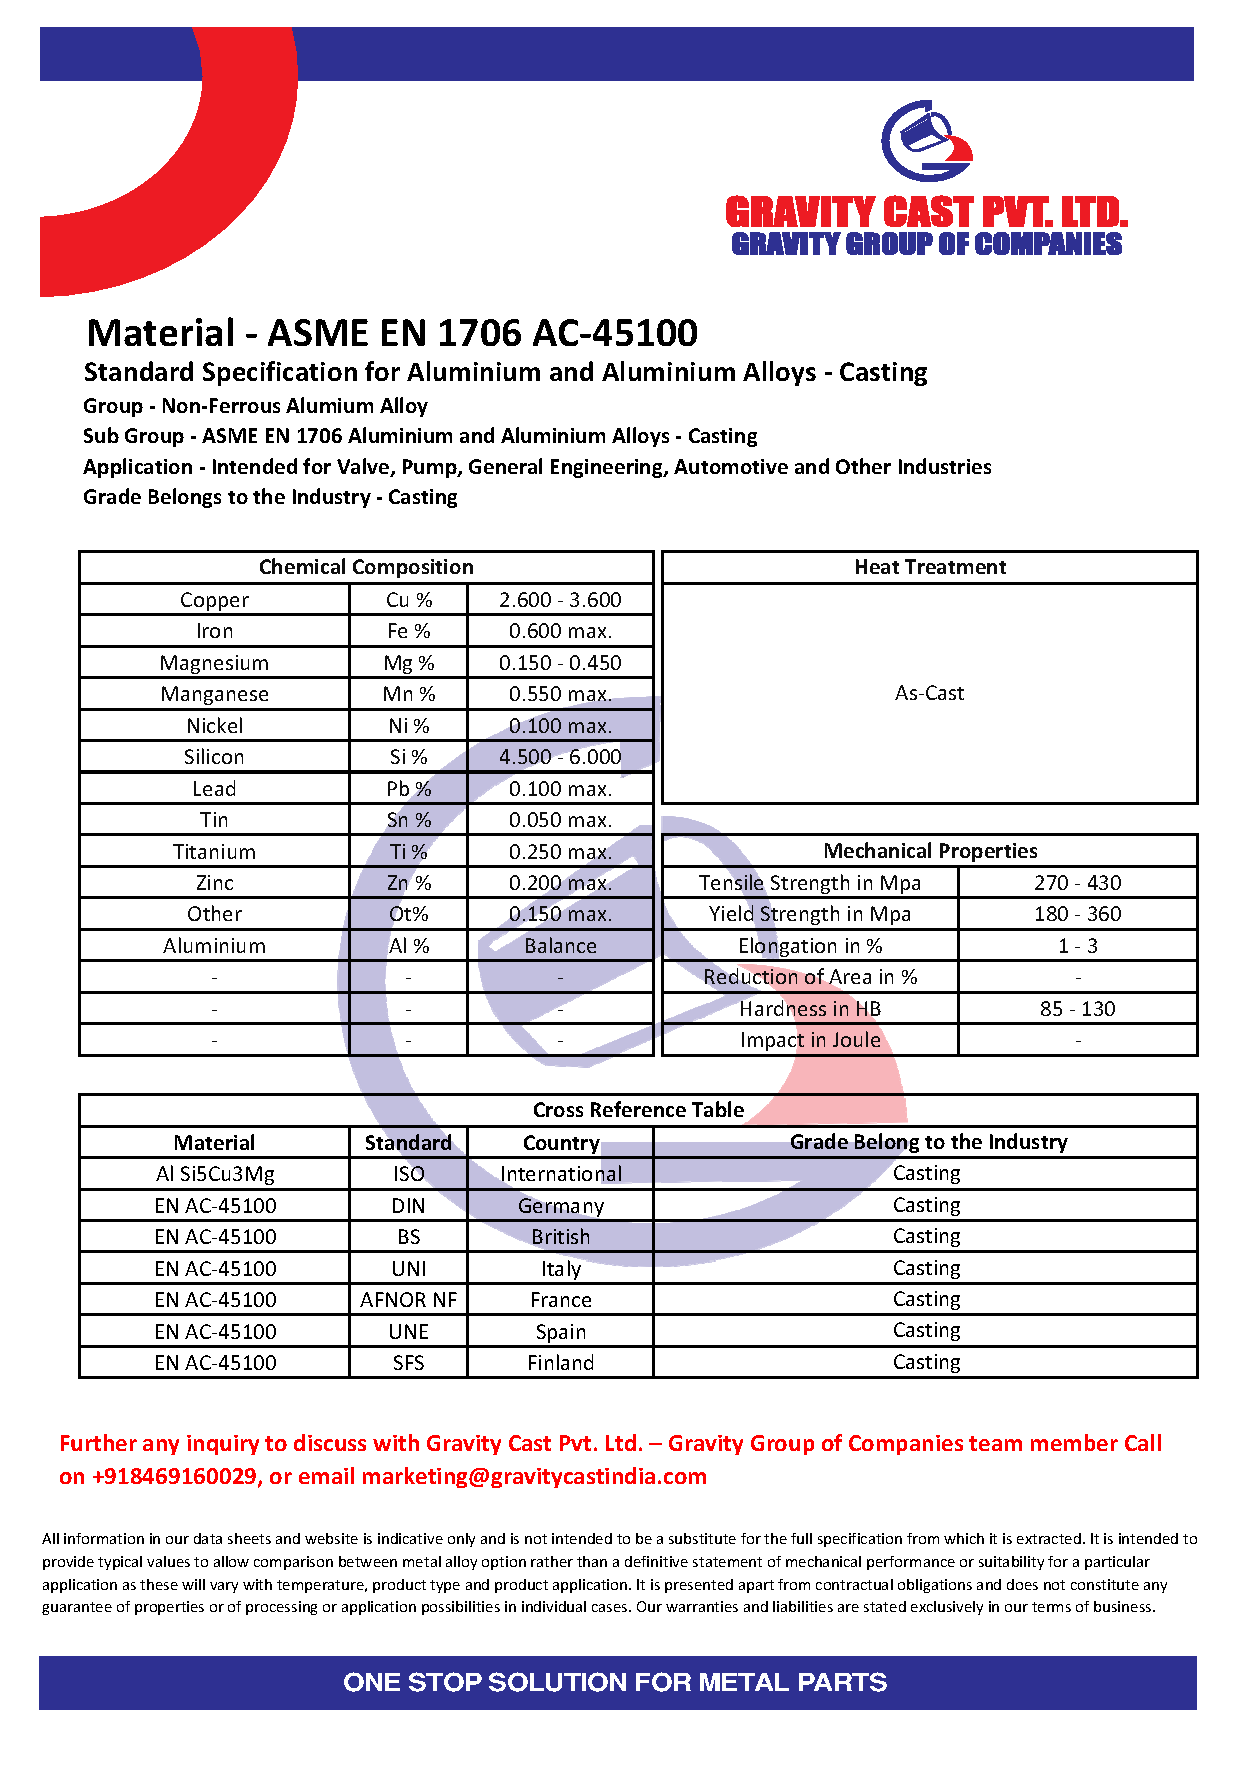 ASME EN 1706 AC-45100.pdf